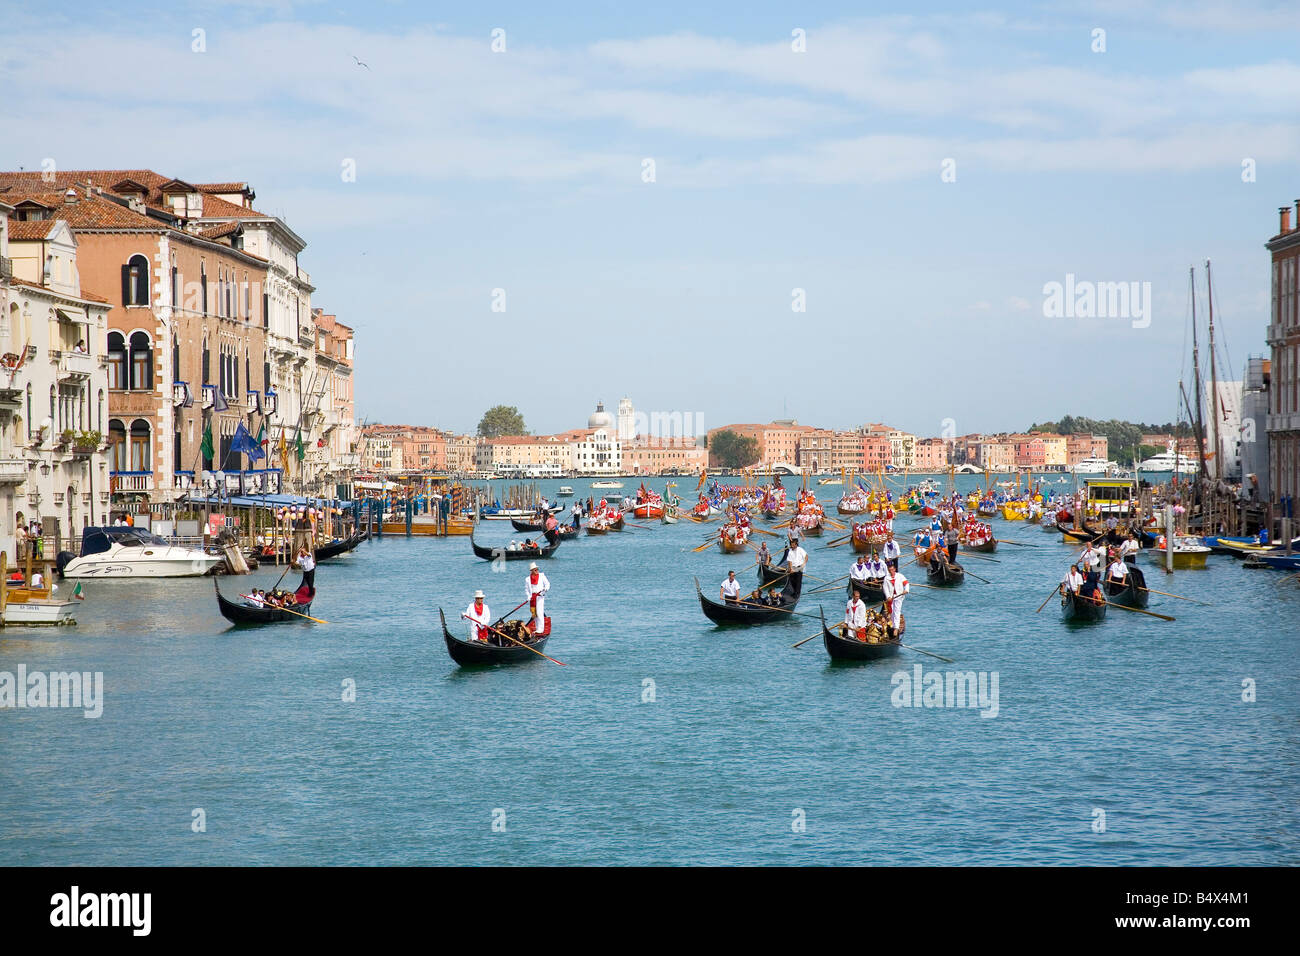 Gondeln führen die Prozession am Canal Grande in Venedig für die historische Regatta, die jedes Jahr im September stattfindet Stockfoto